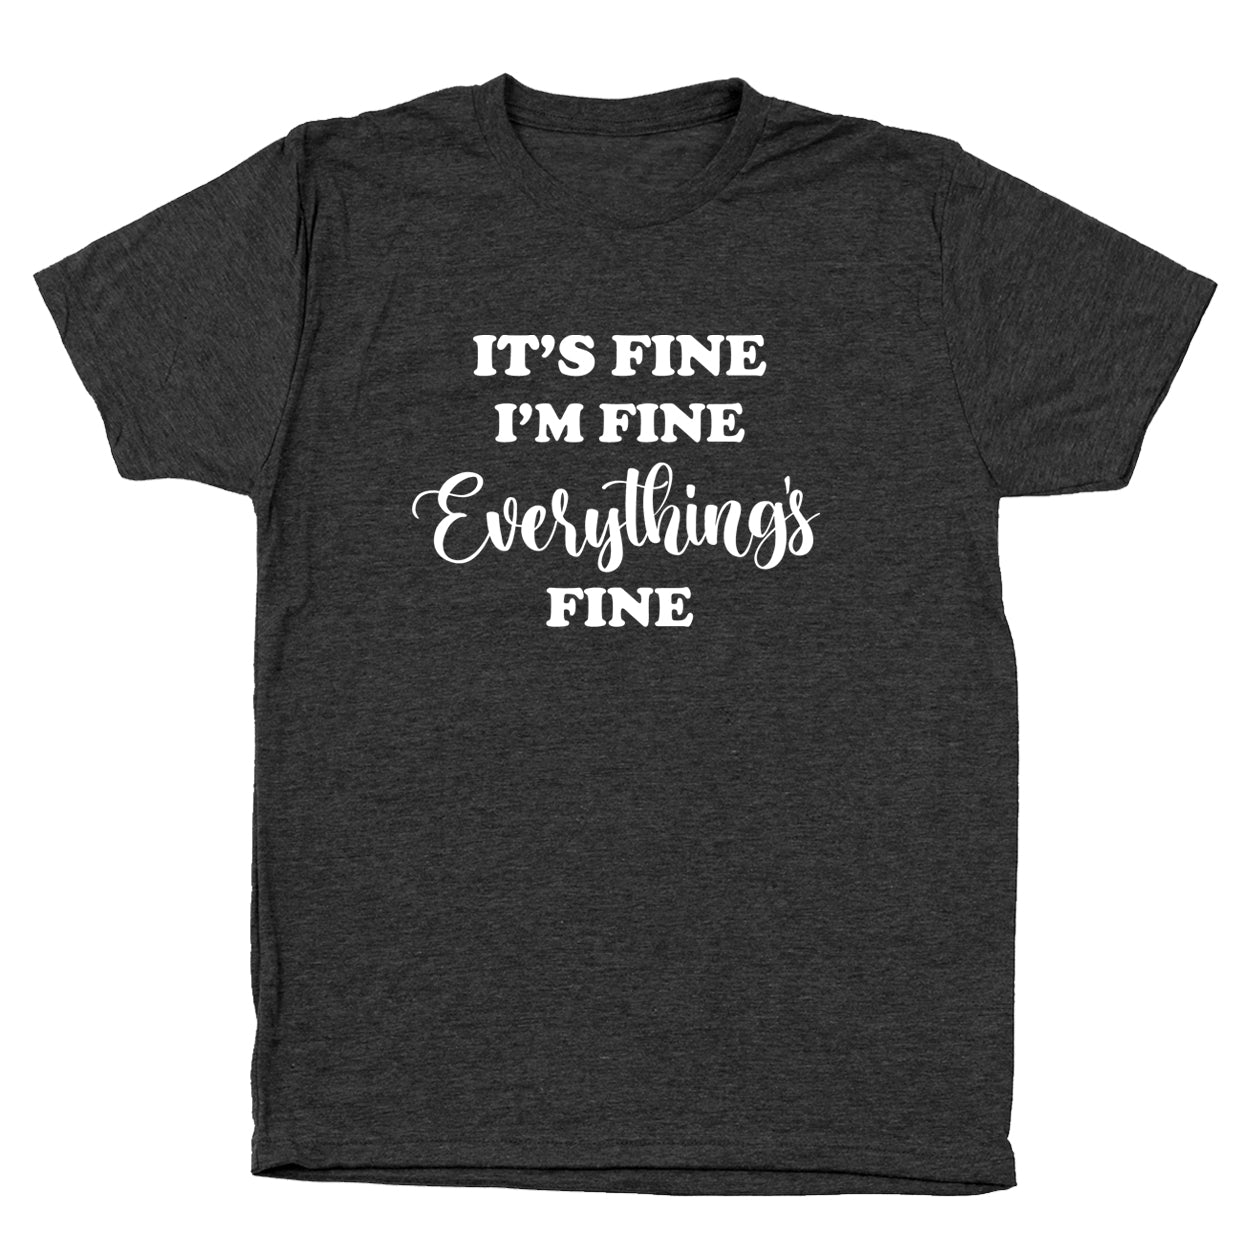 I'm Fine Everything's Fine Tshirt - Donkey Tees